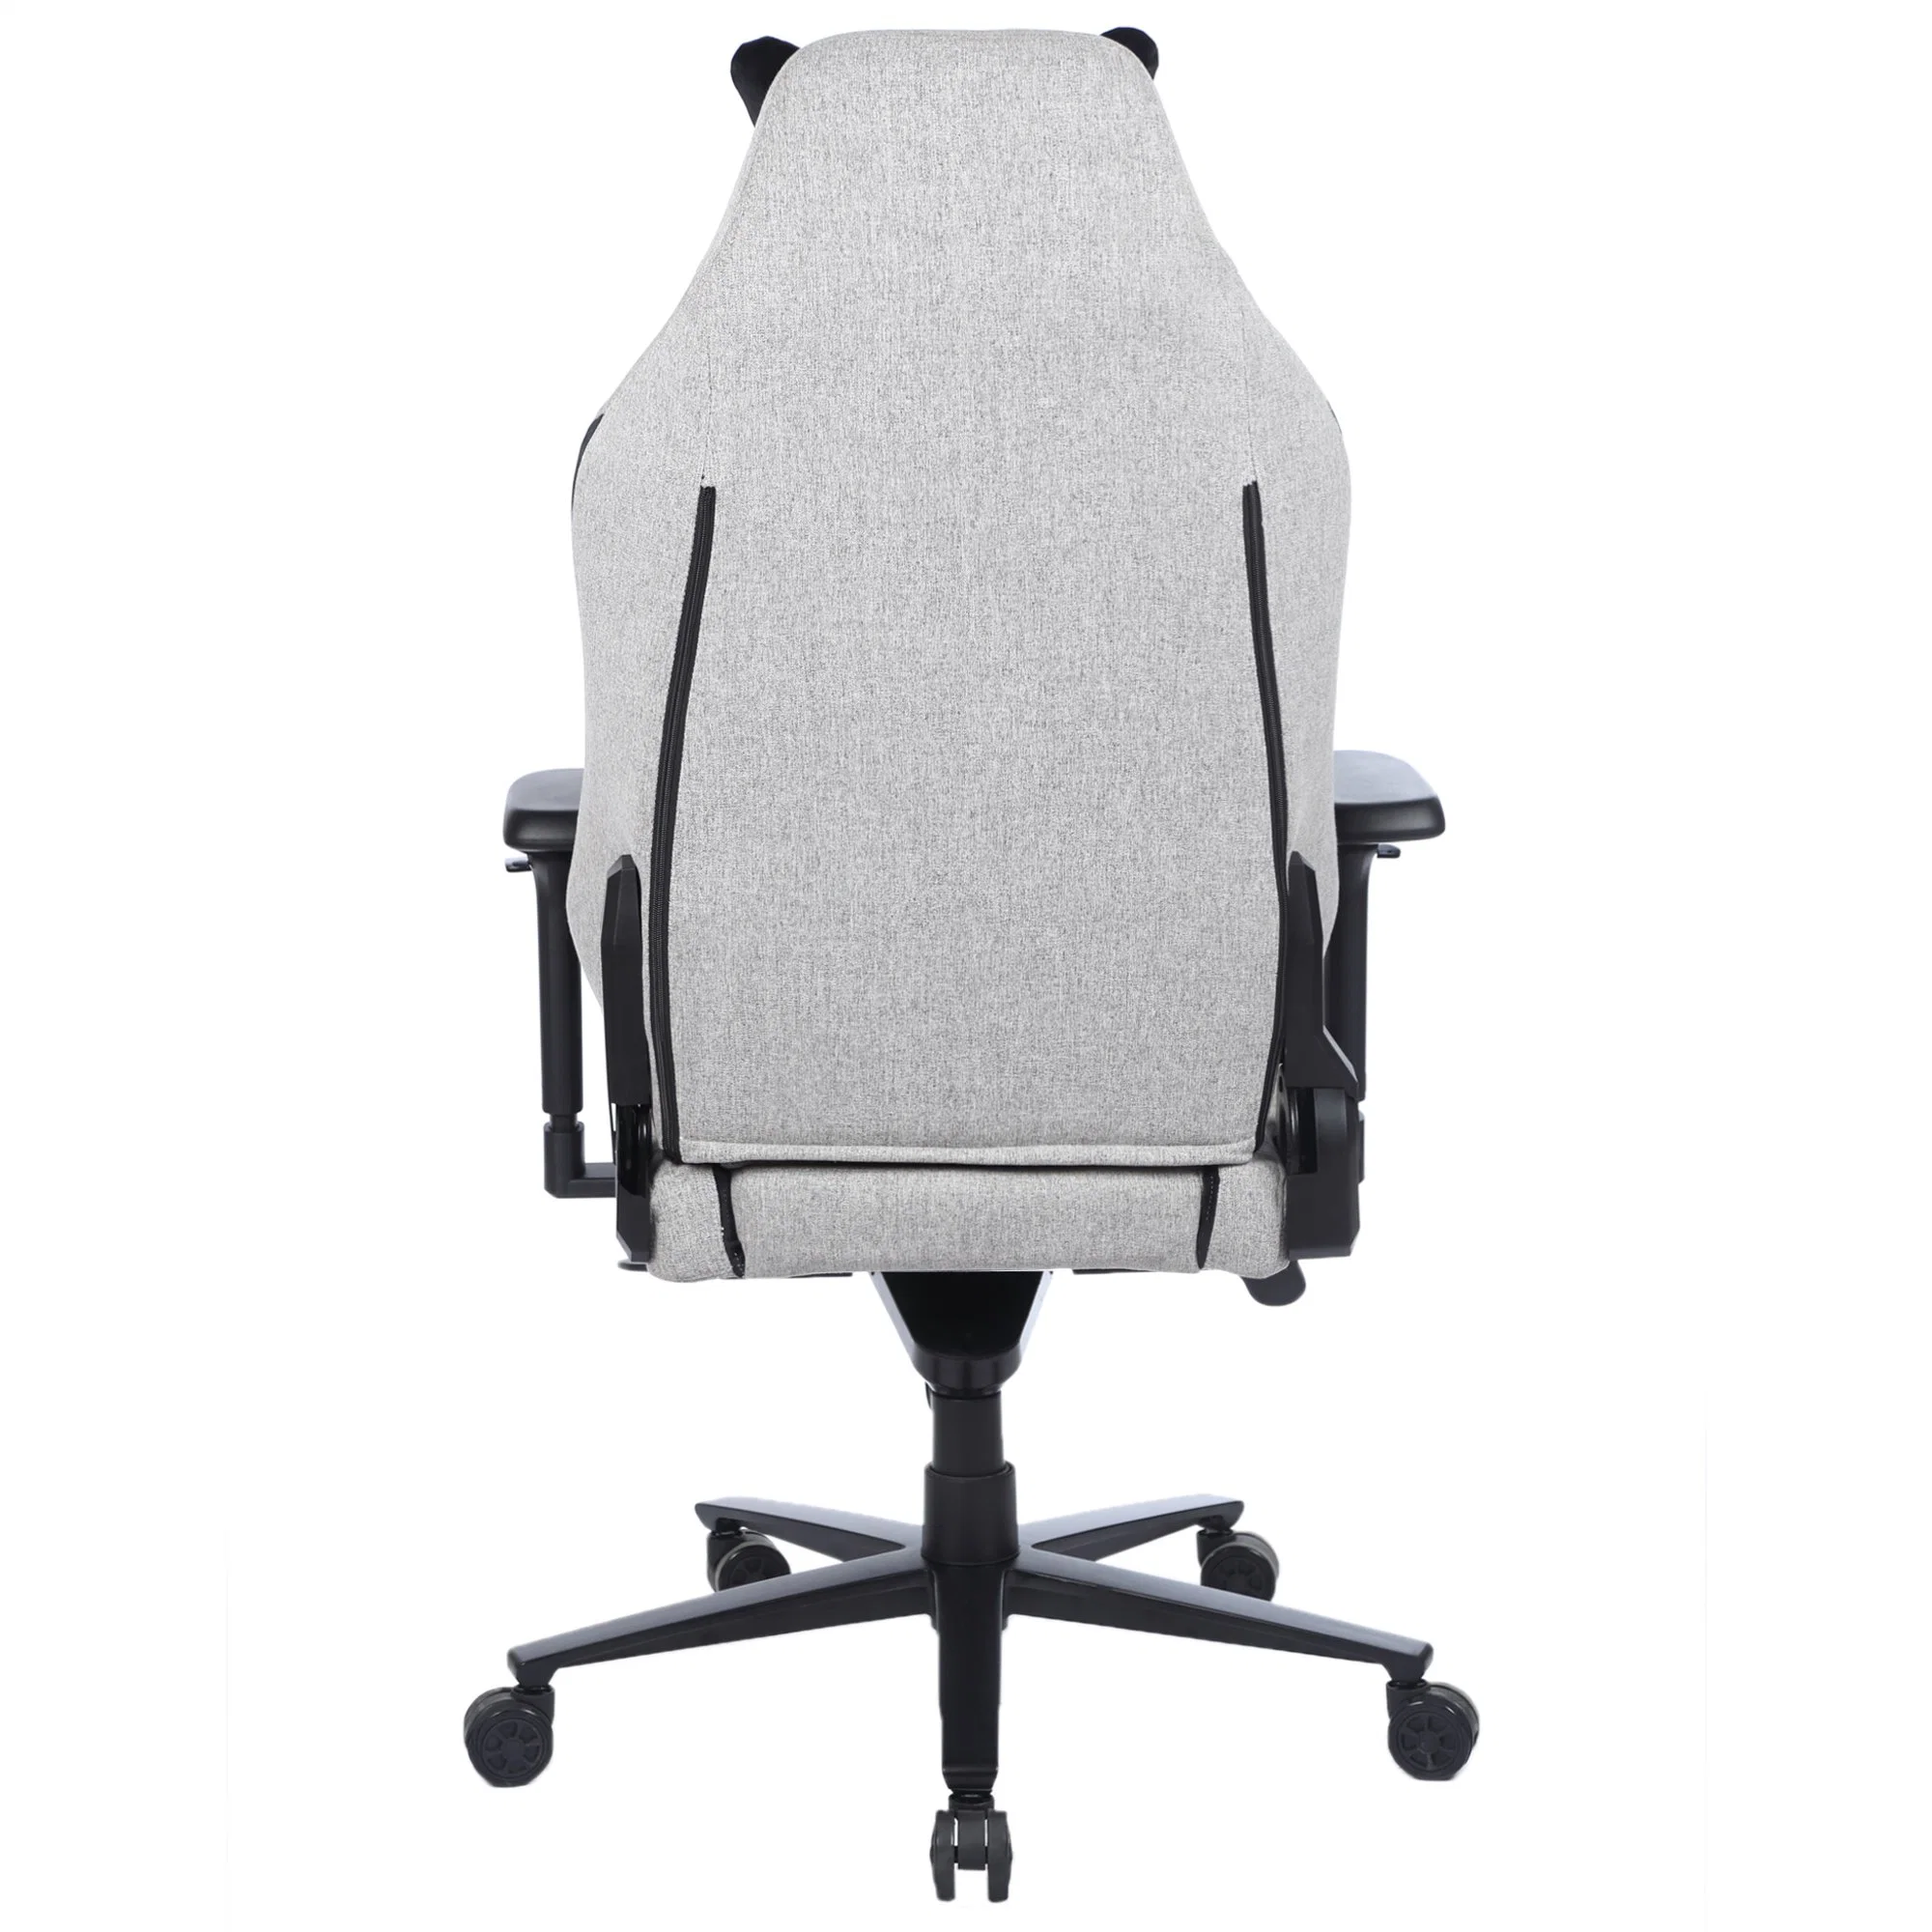 Chaise de jeu avec base en aluminium anti-corrosion Yuhang, chaise de jeu en tissu gris